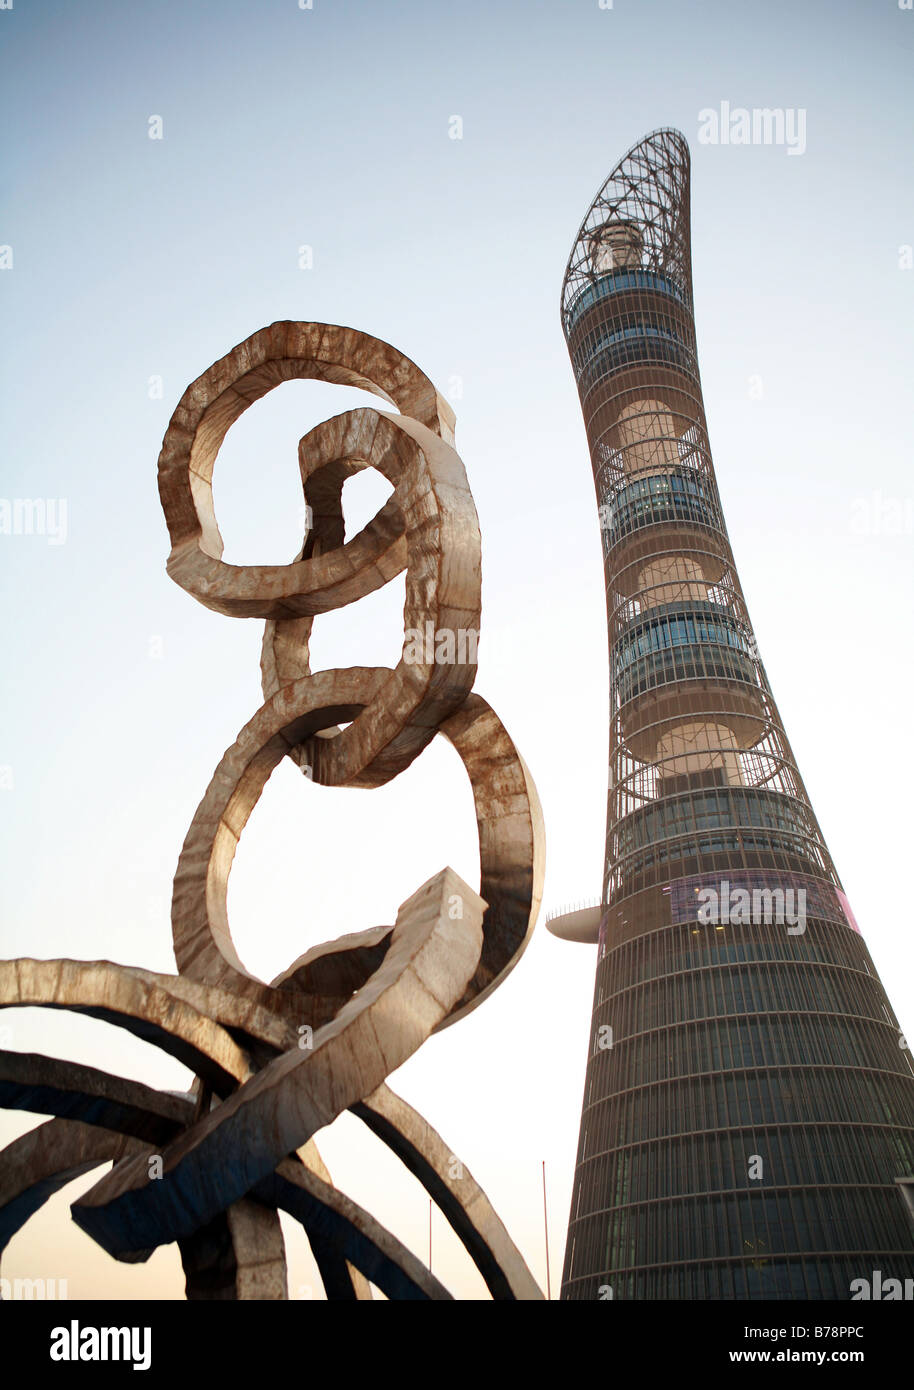 Die Olympischen Ringe in Doha Asian Games 2006 Skulptur gesehen vor dem Brenner-Turm an der Aspire Sportakademie in Doha, Katar. Stockfoto